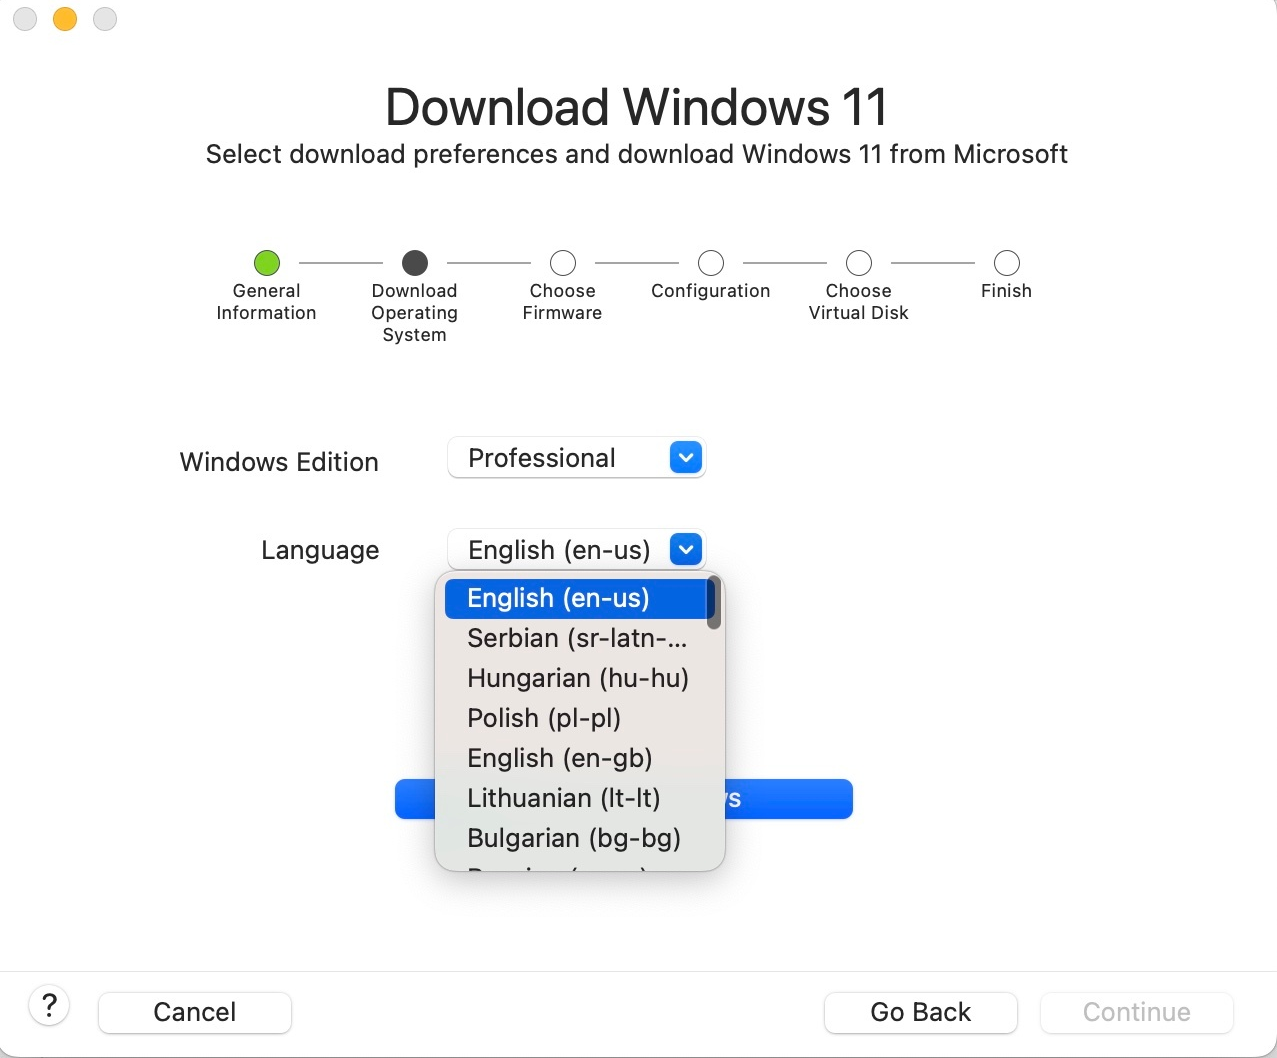 该屏幕截图显示用于选择 Windows 11 首选语言的字段。